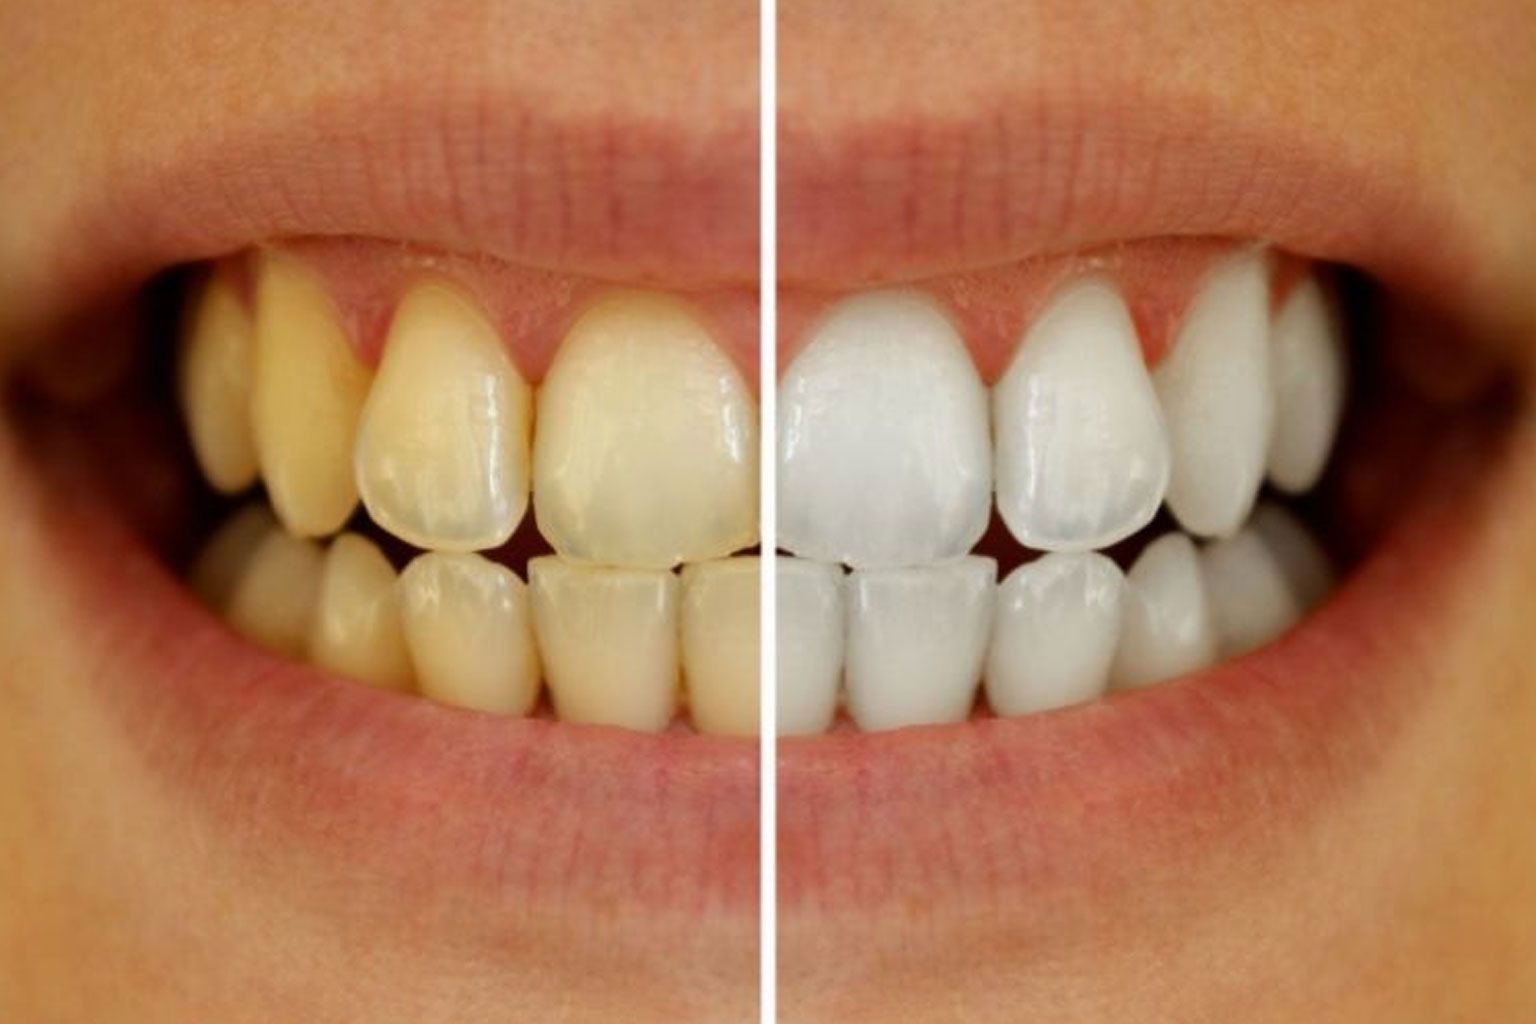 5 ways to whiten your teeth